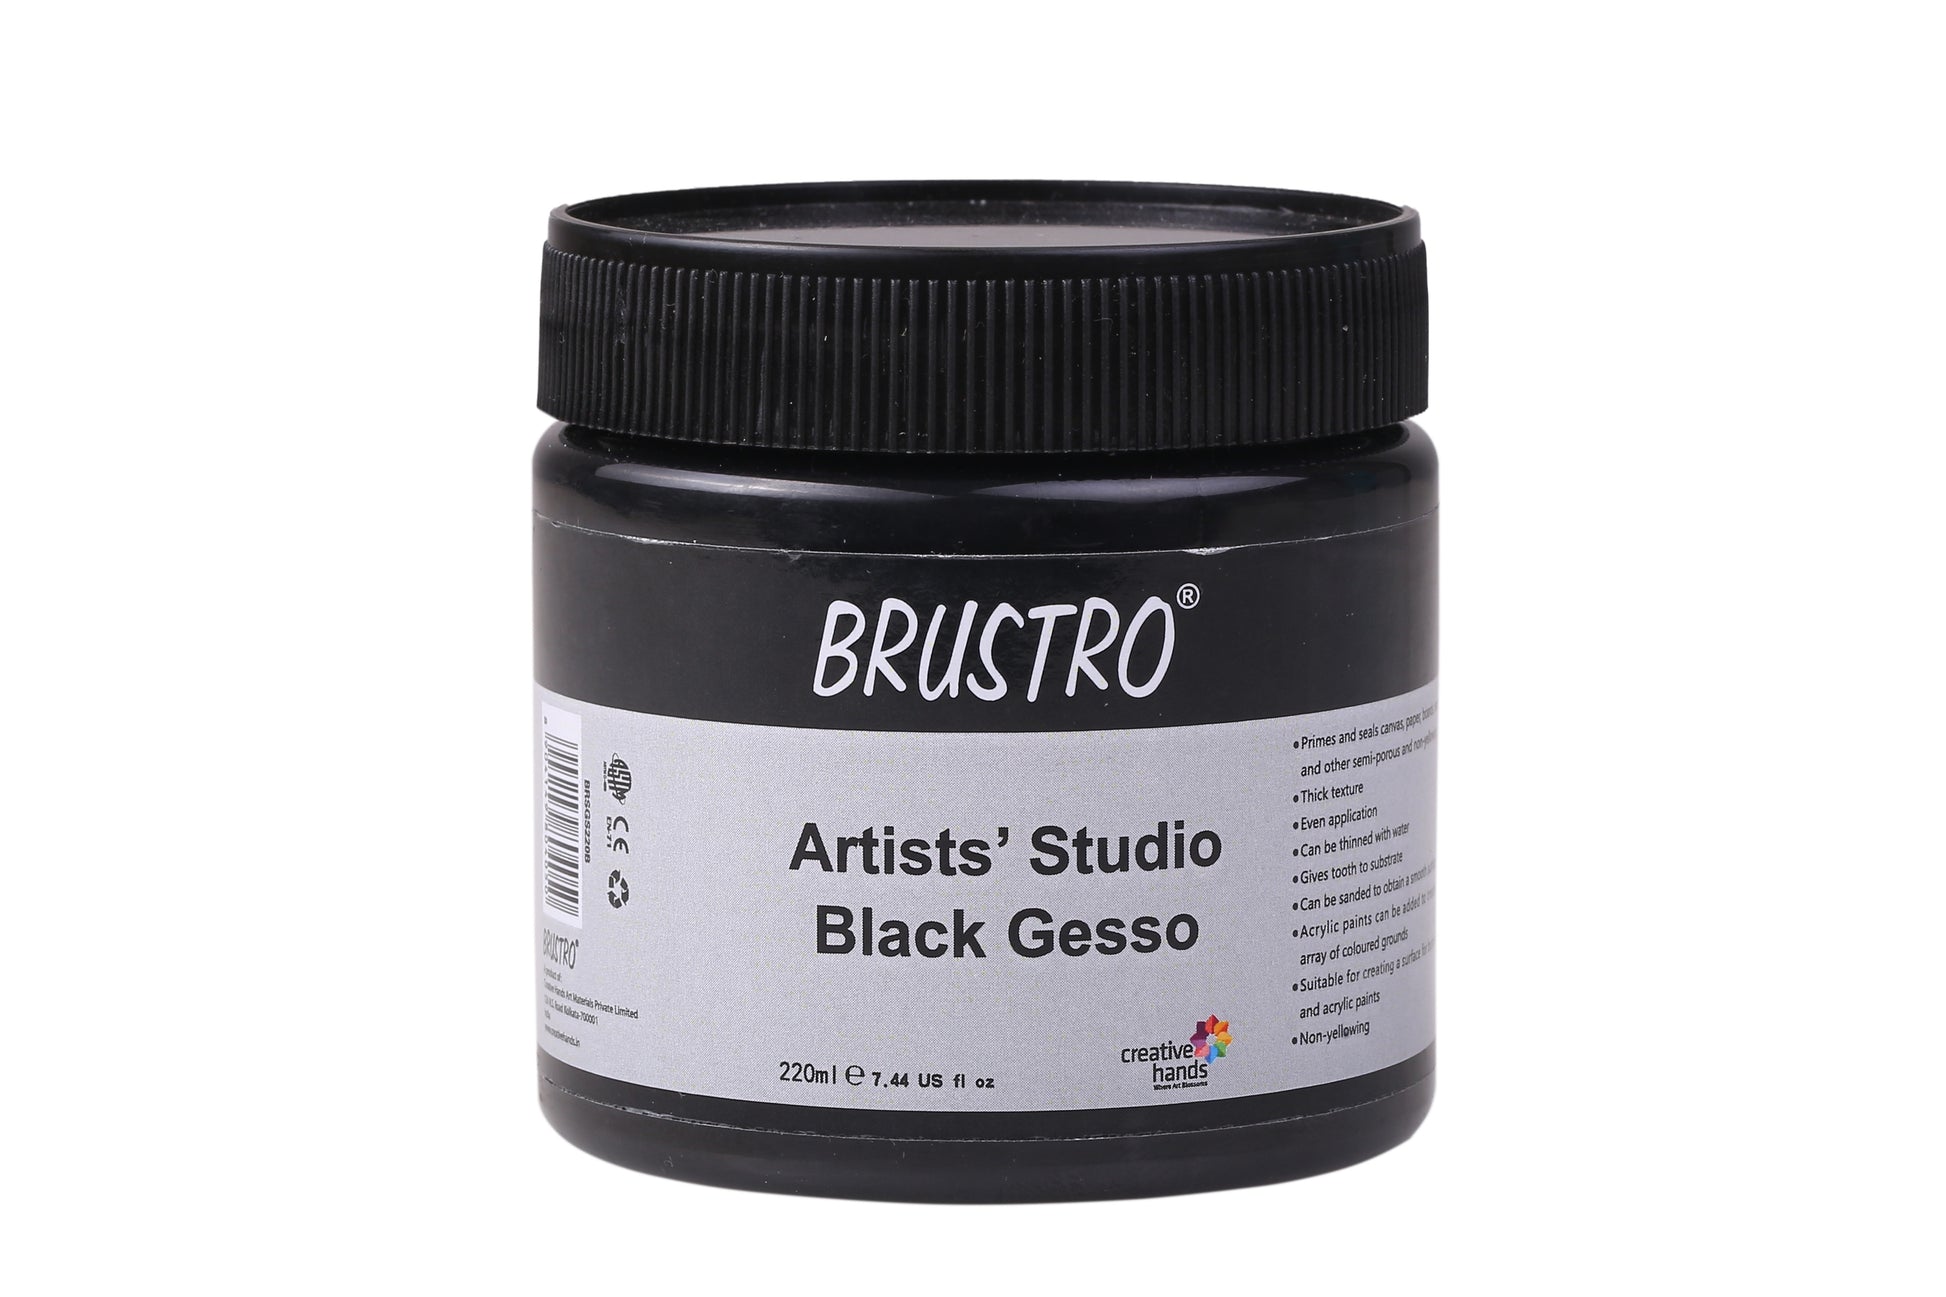 U.S. Art Supply Black Gesso Acrylic Medium, 500ml Tub